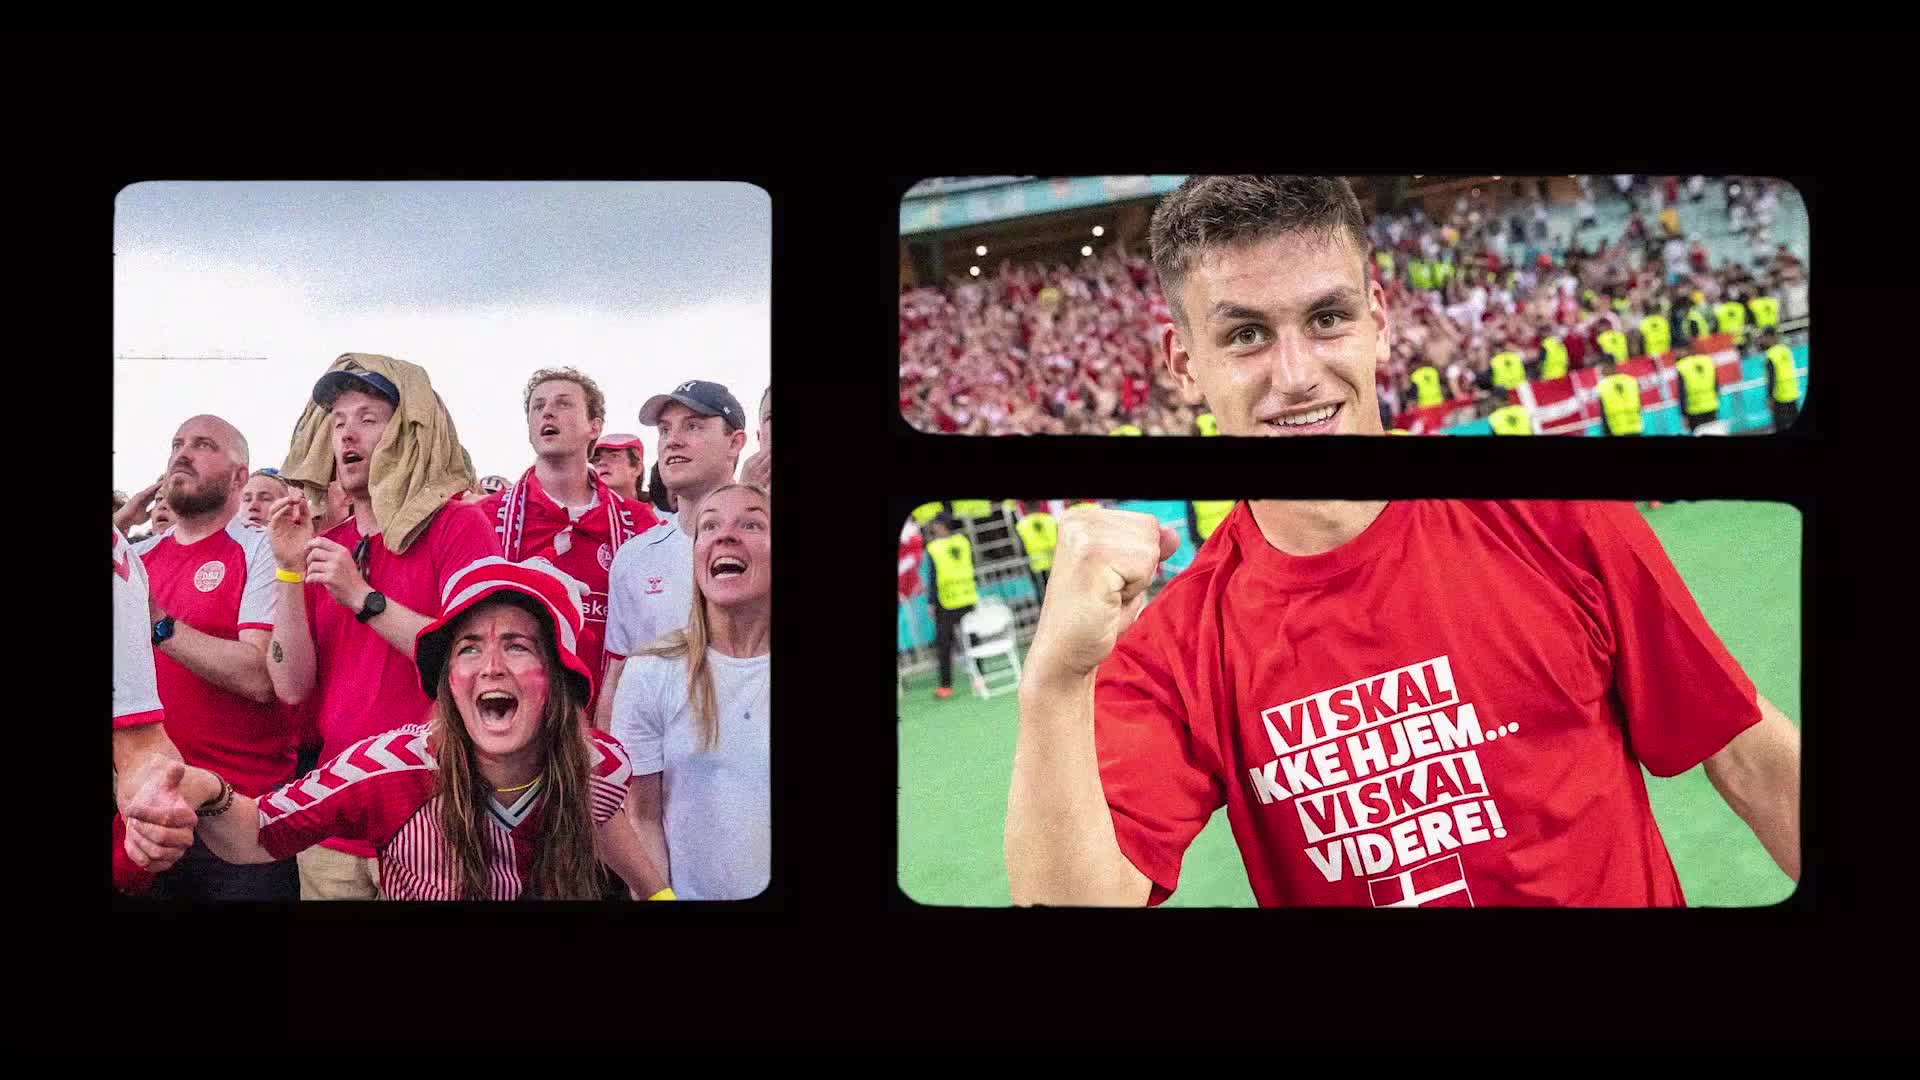 Dansk fodbold skal samle og begejstre